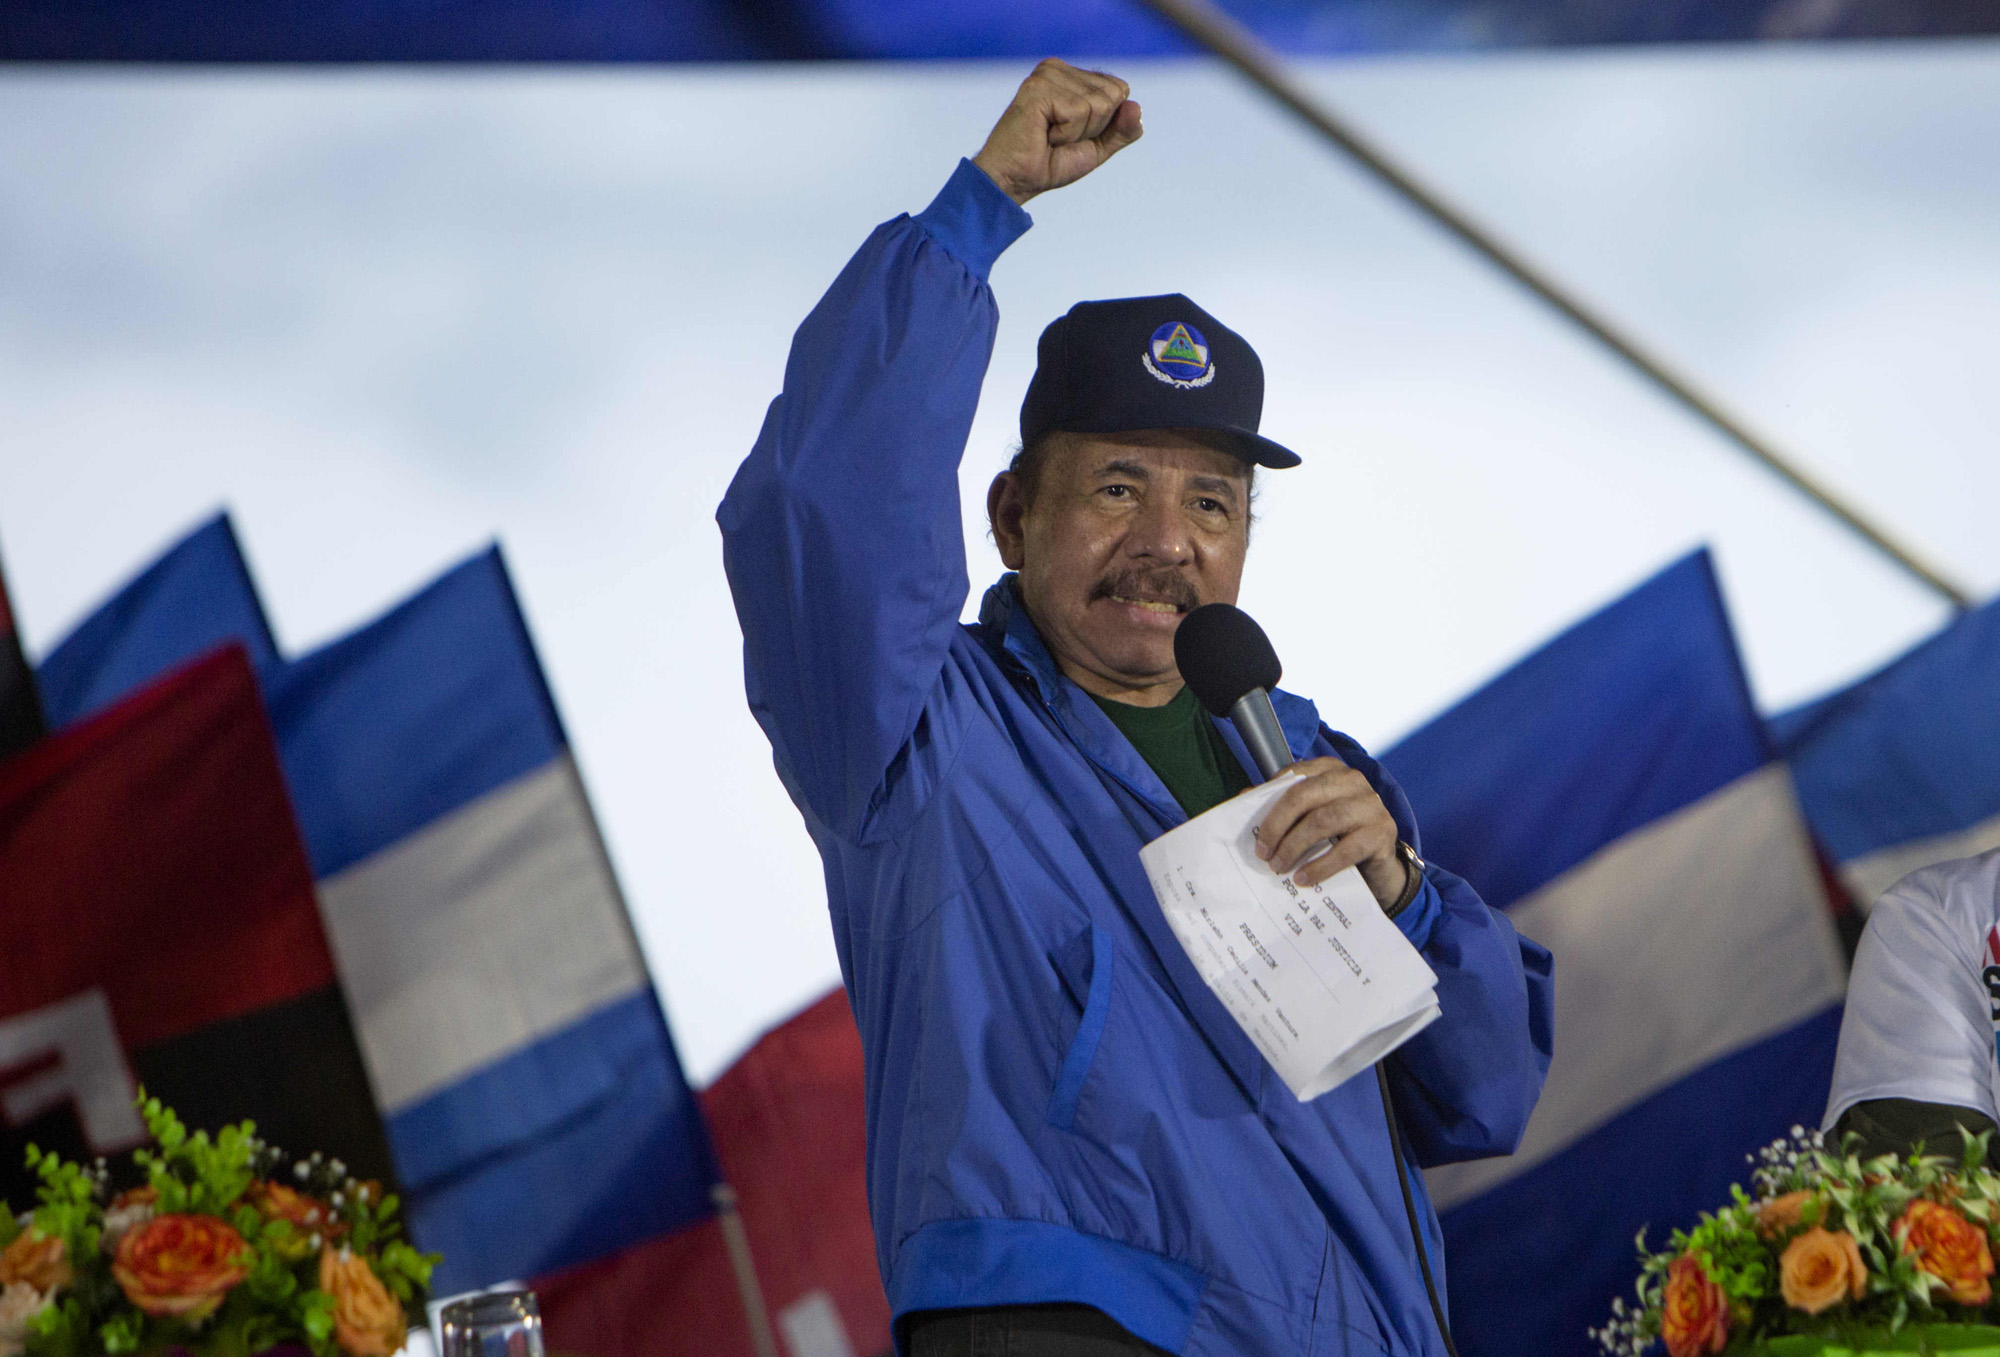 El chiste del día: Daniel Ortega afirma que su policía es más consciente, digna y solidaria